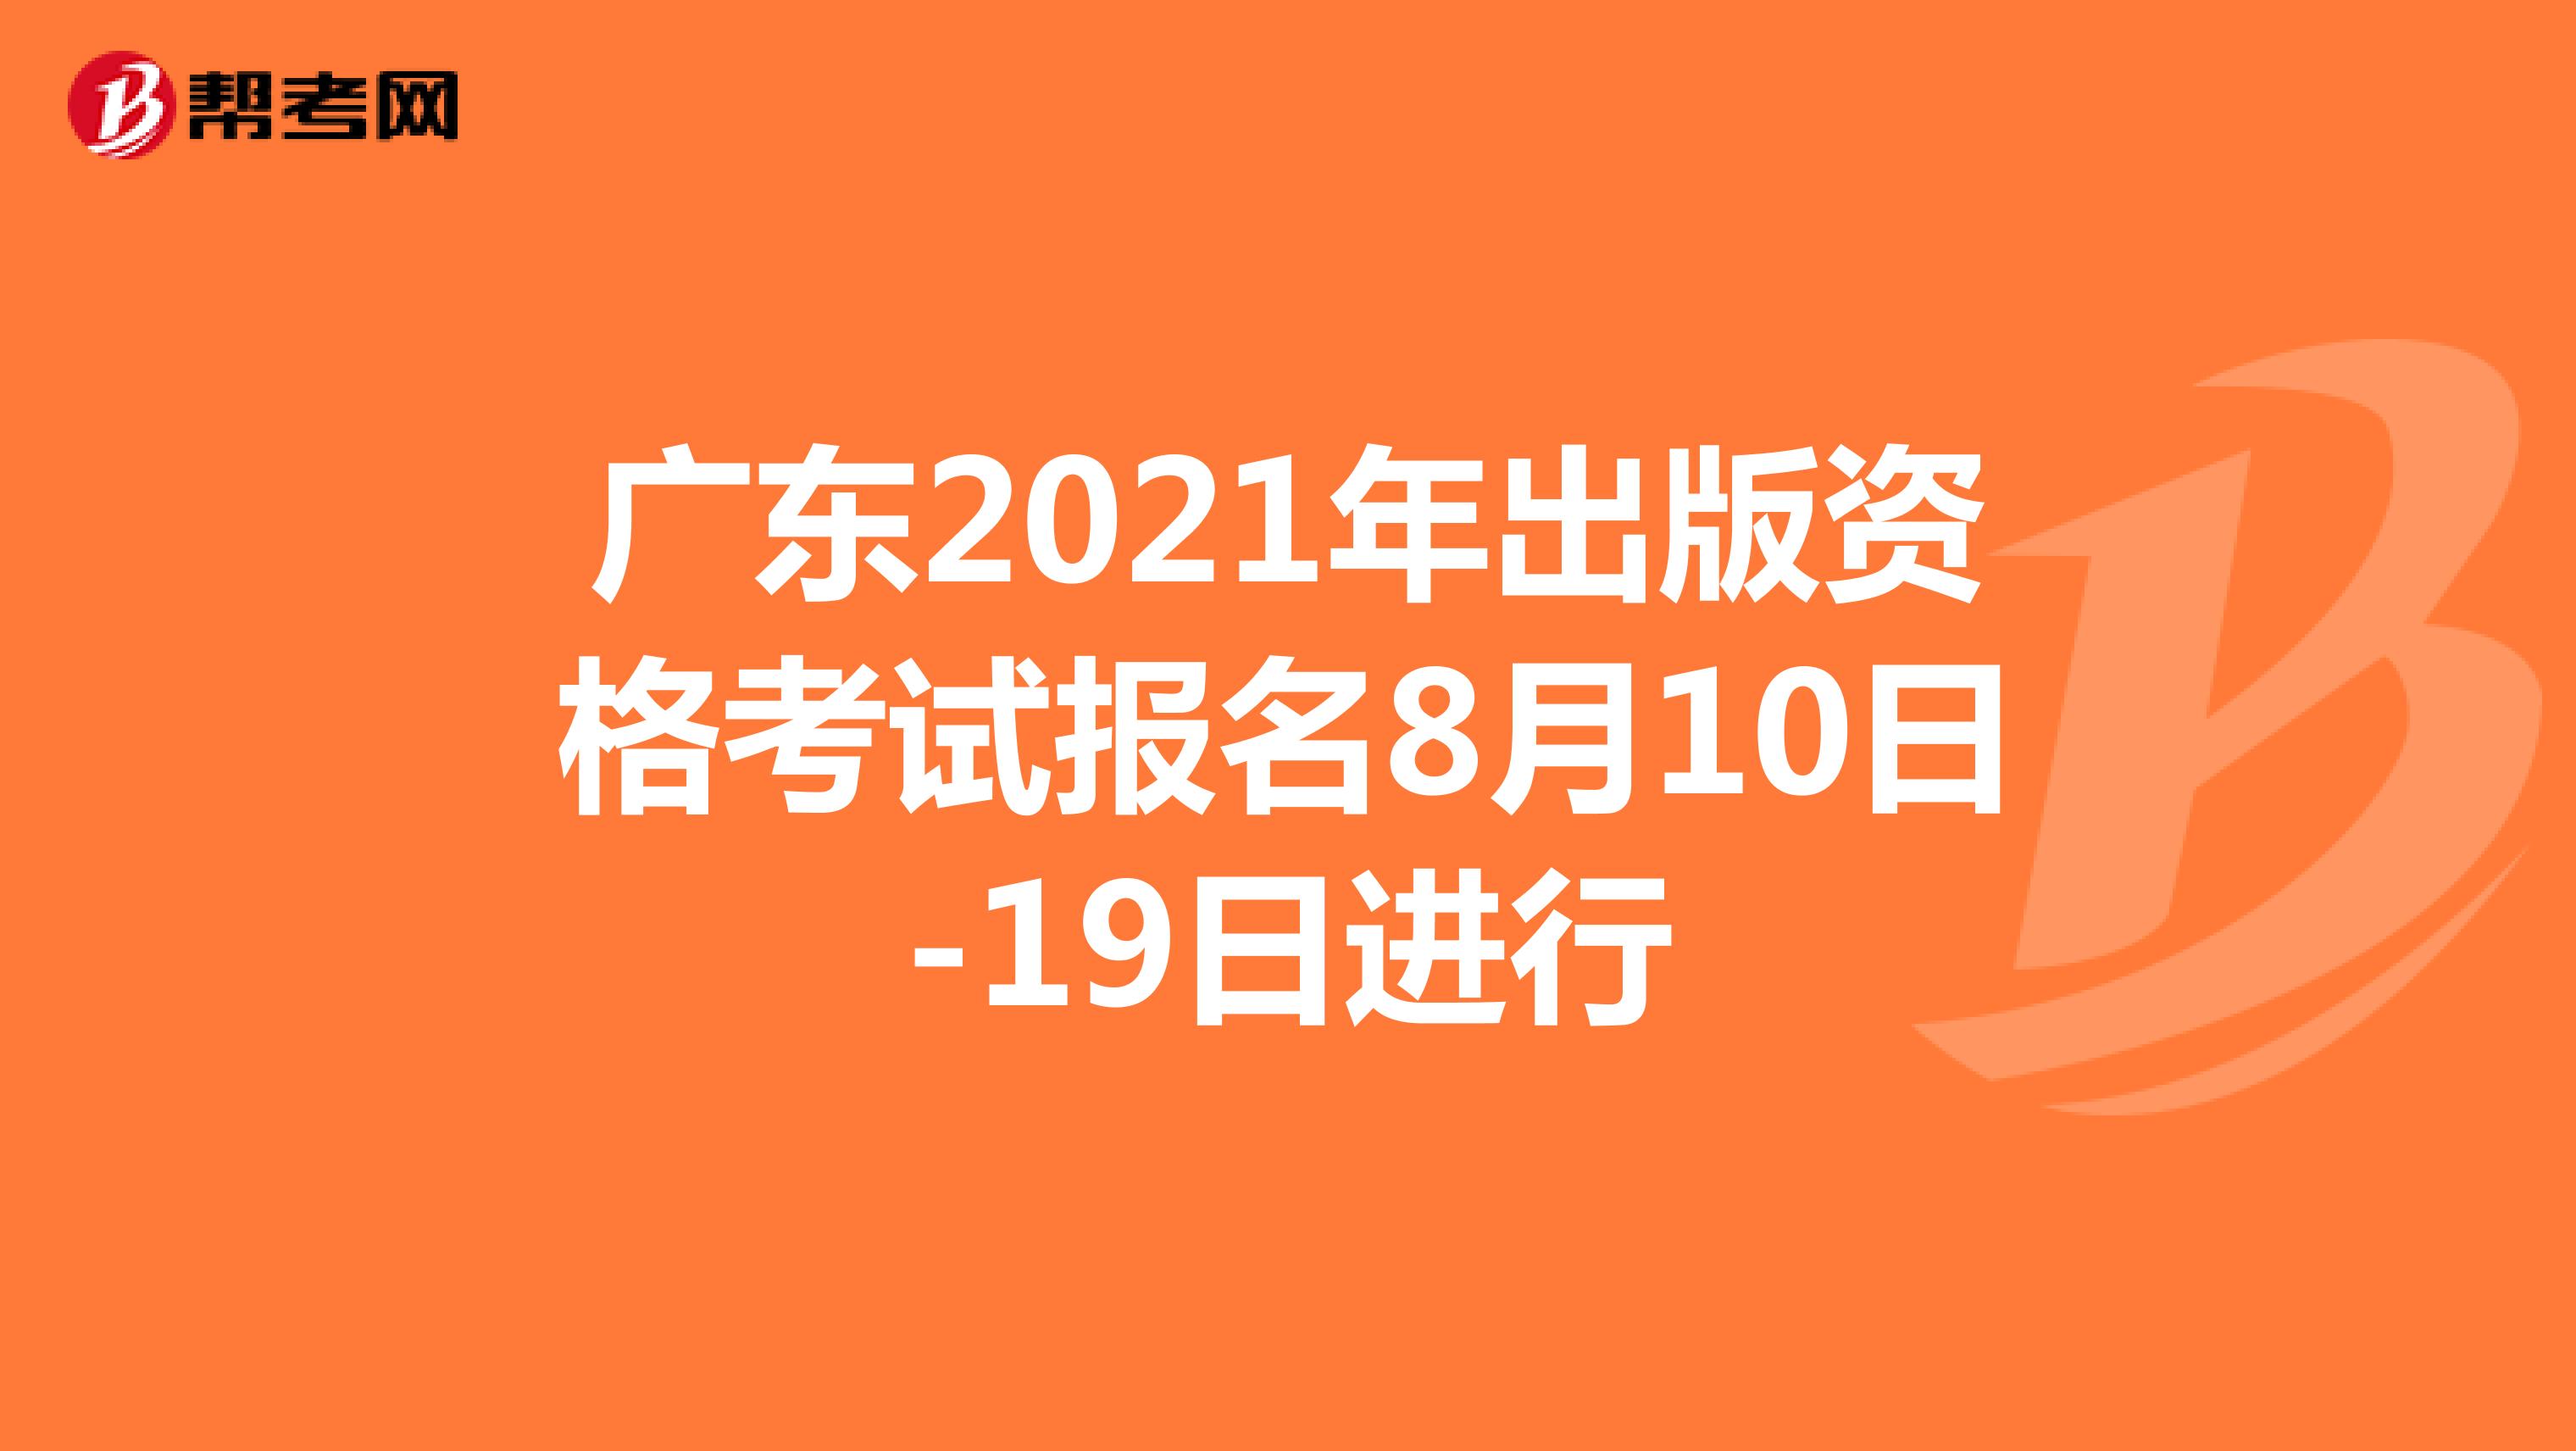 广东2021年出版资格考试报名8月10日-19日进行